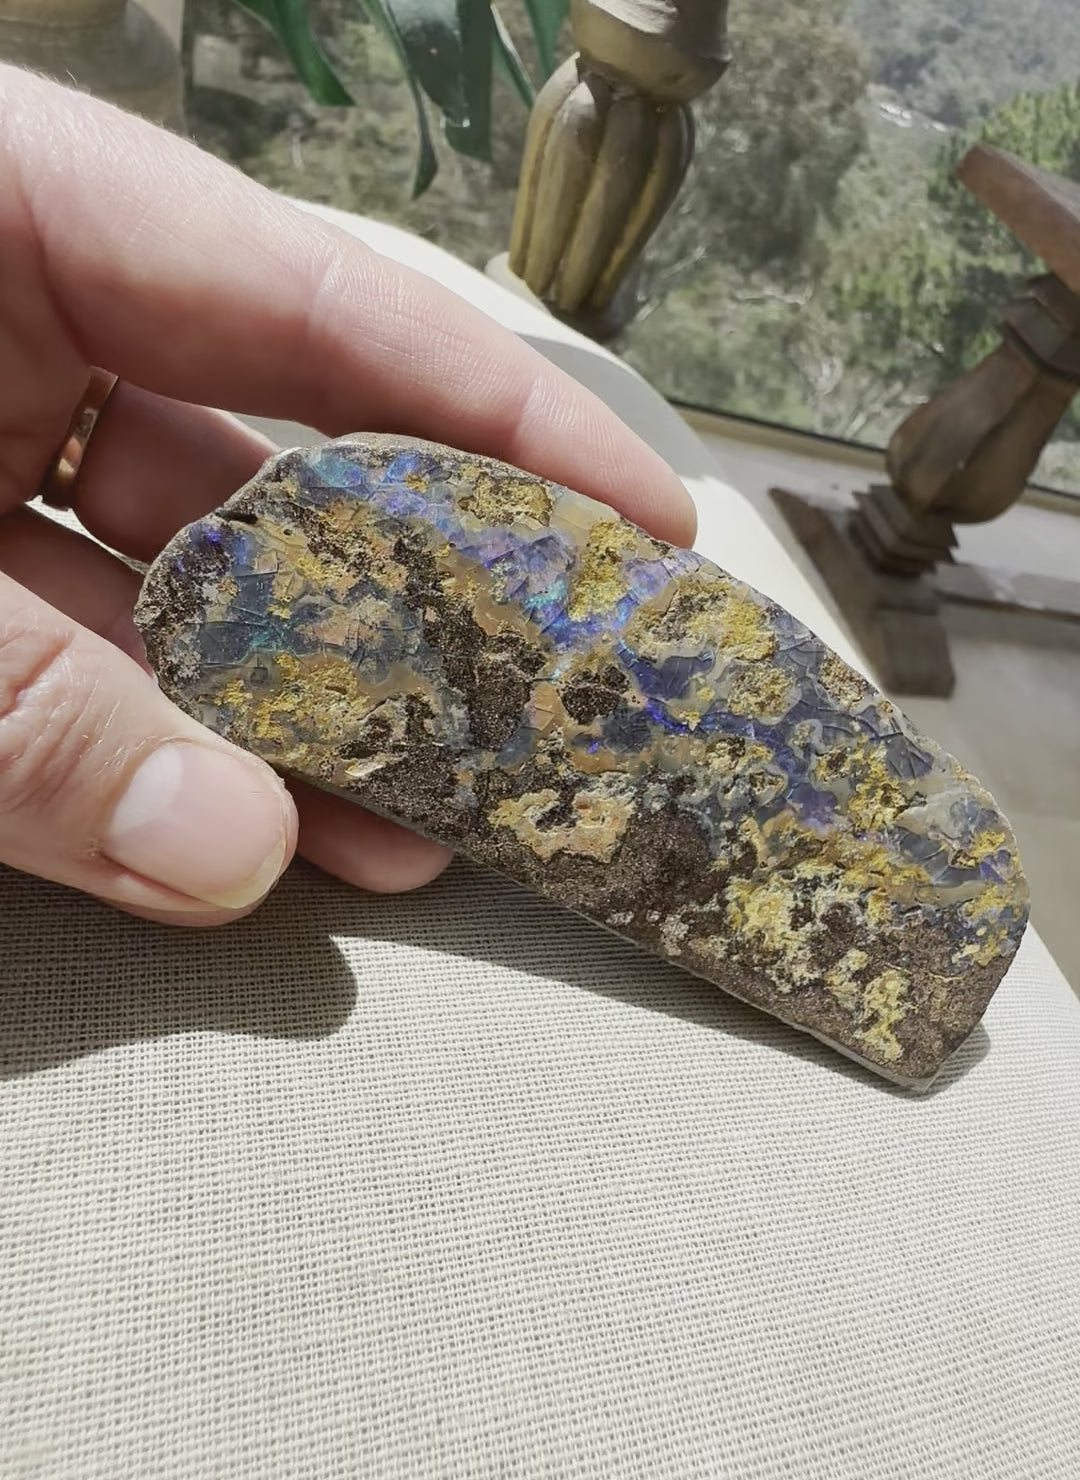 Large Queensland Boulder Opal Specimen